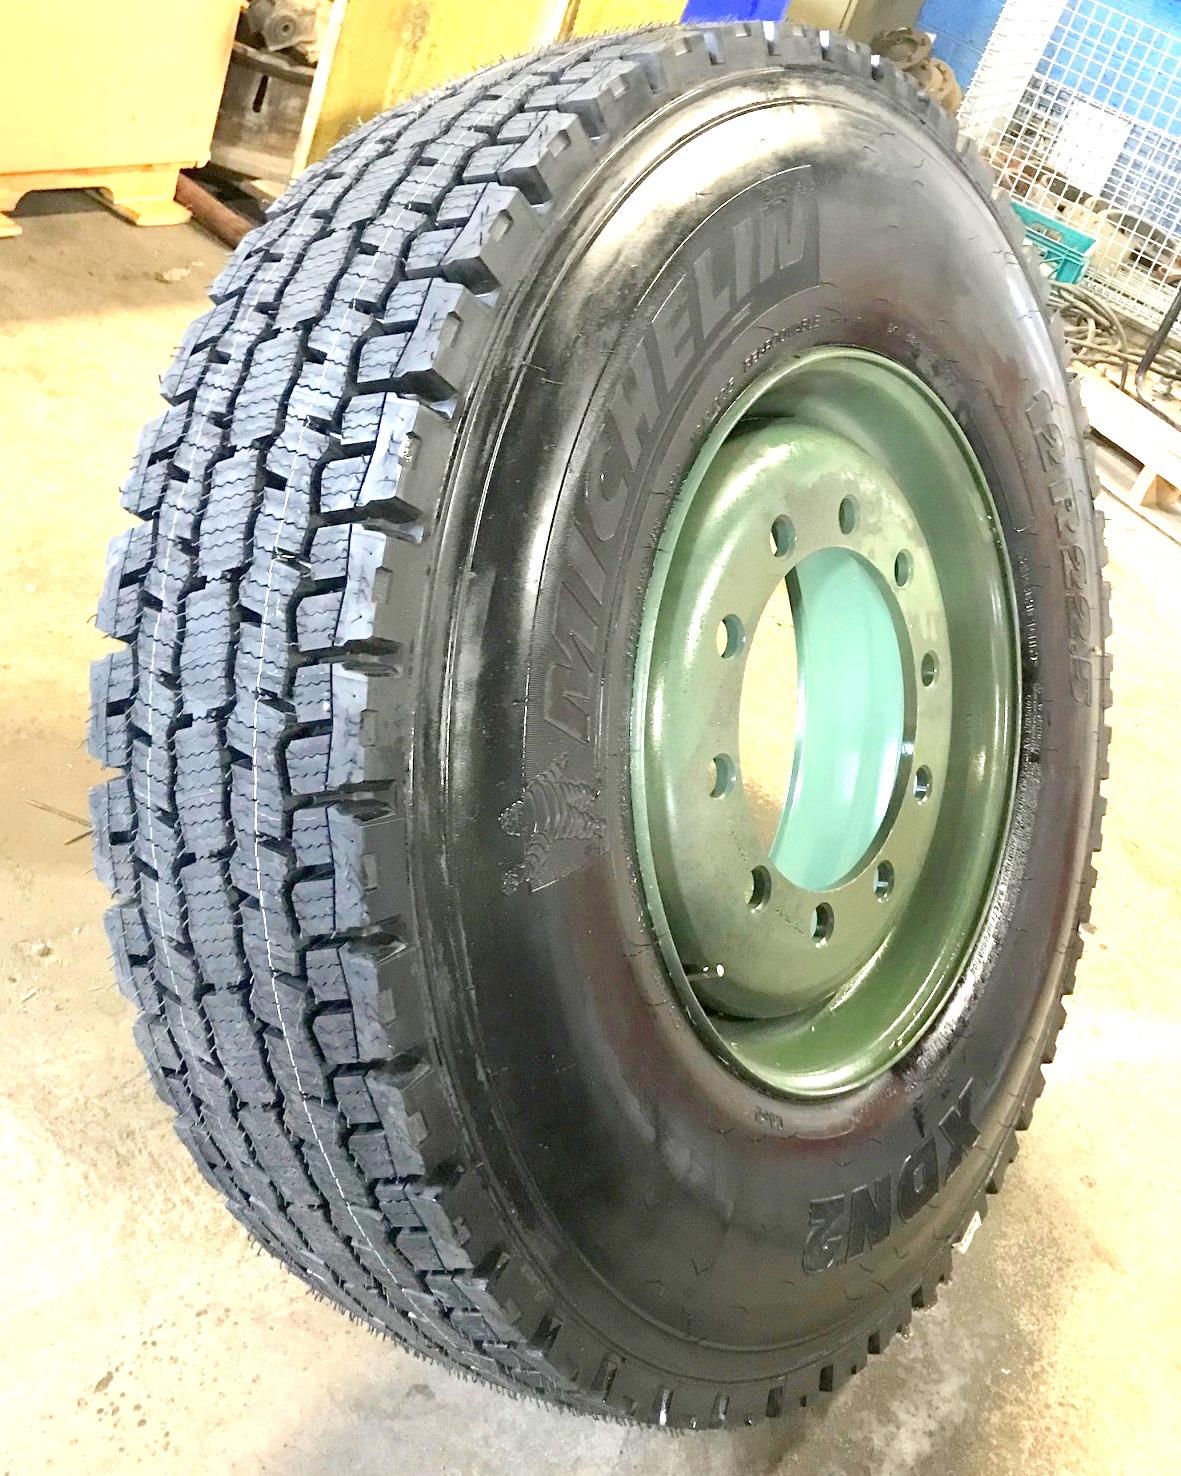 TI-459 | TI-459  Michelin XDN2 12R22.5 Tire Mounted on 10 Hole Rim(12).jpg